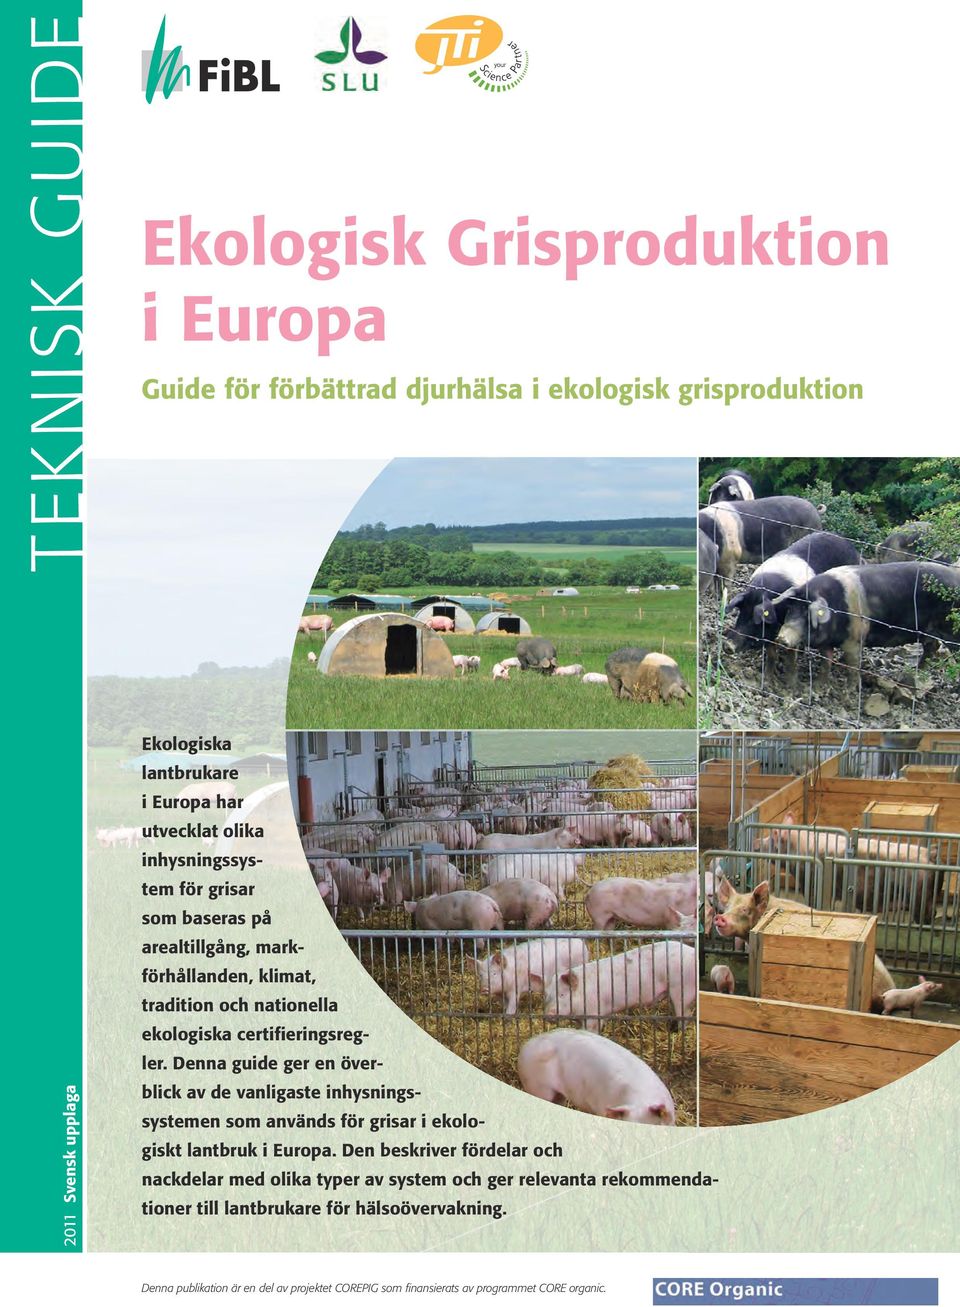 Denna guide ger en överblick av de vanligaste inhysningssystemen som används för grisar i ekologiskt lantbruk i Europa.